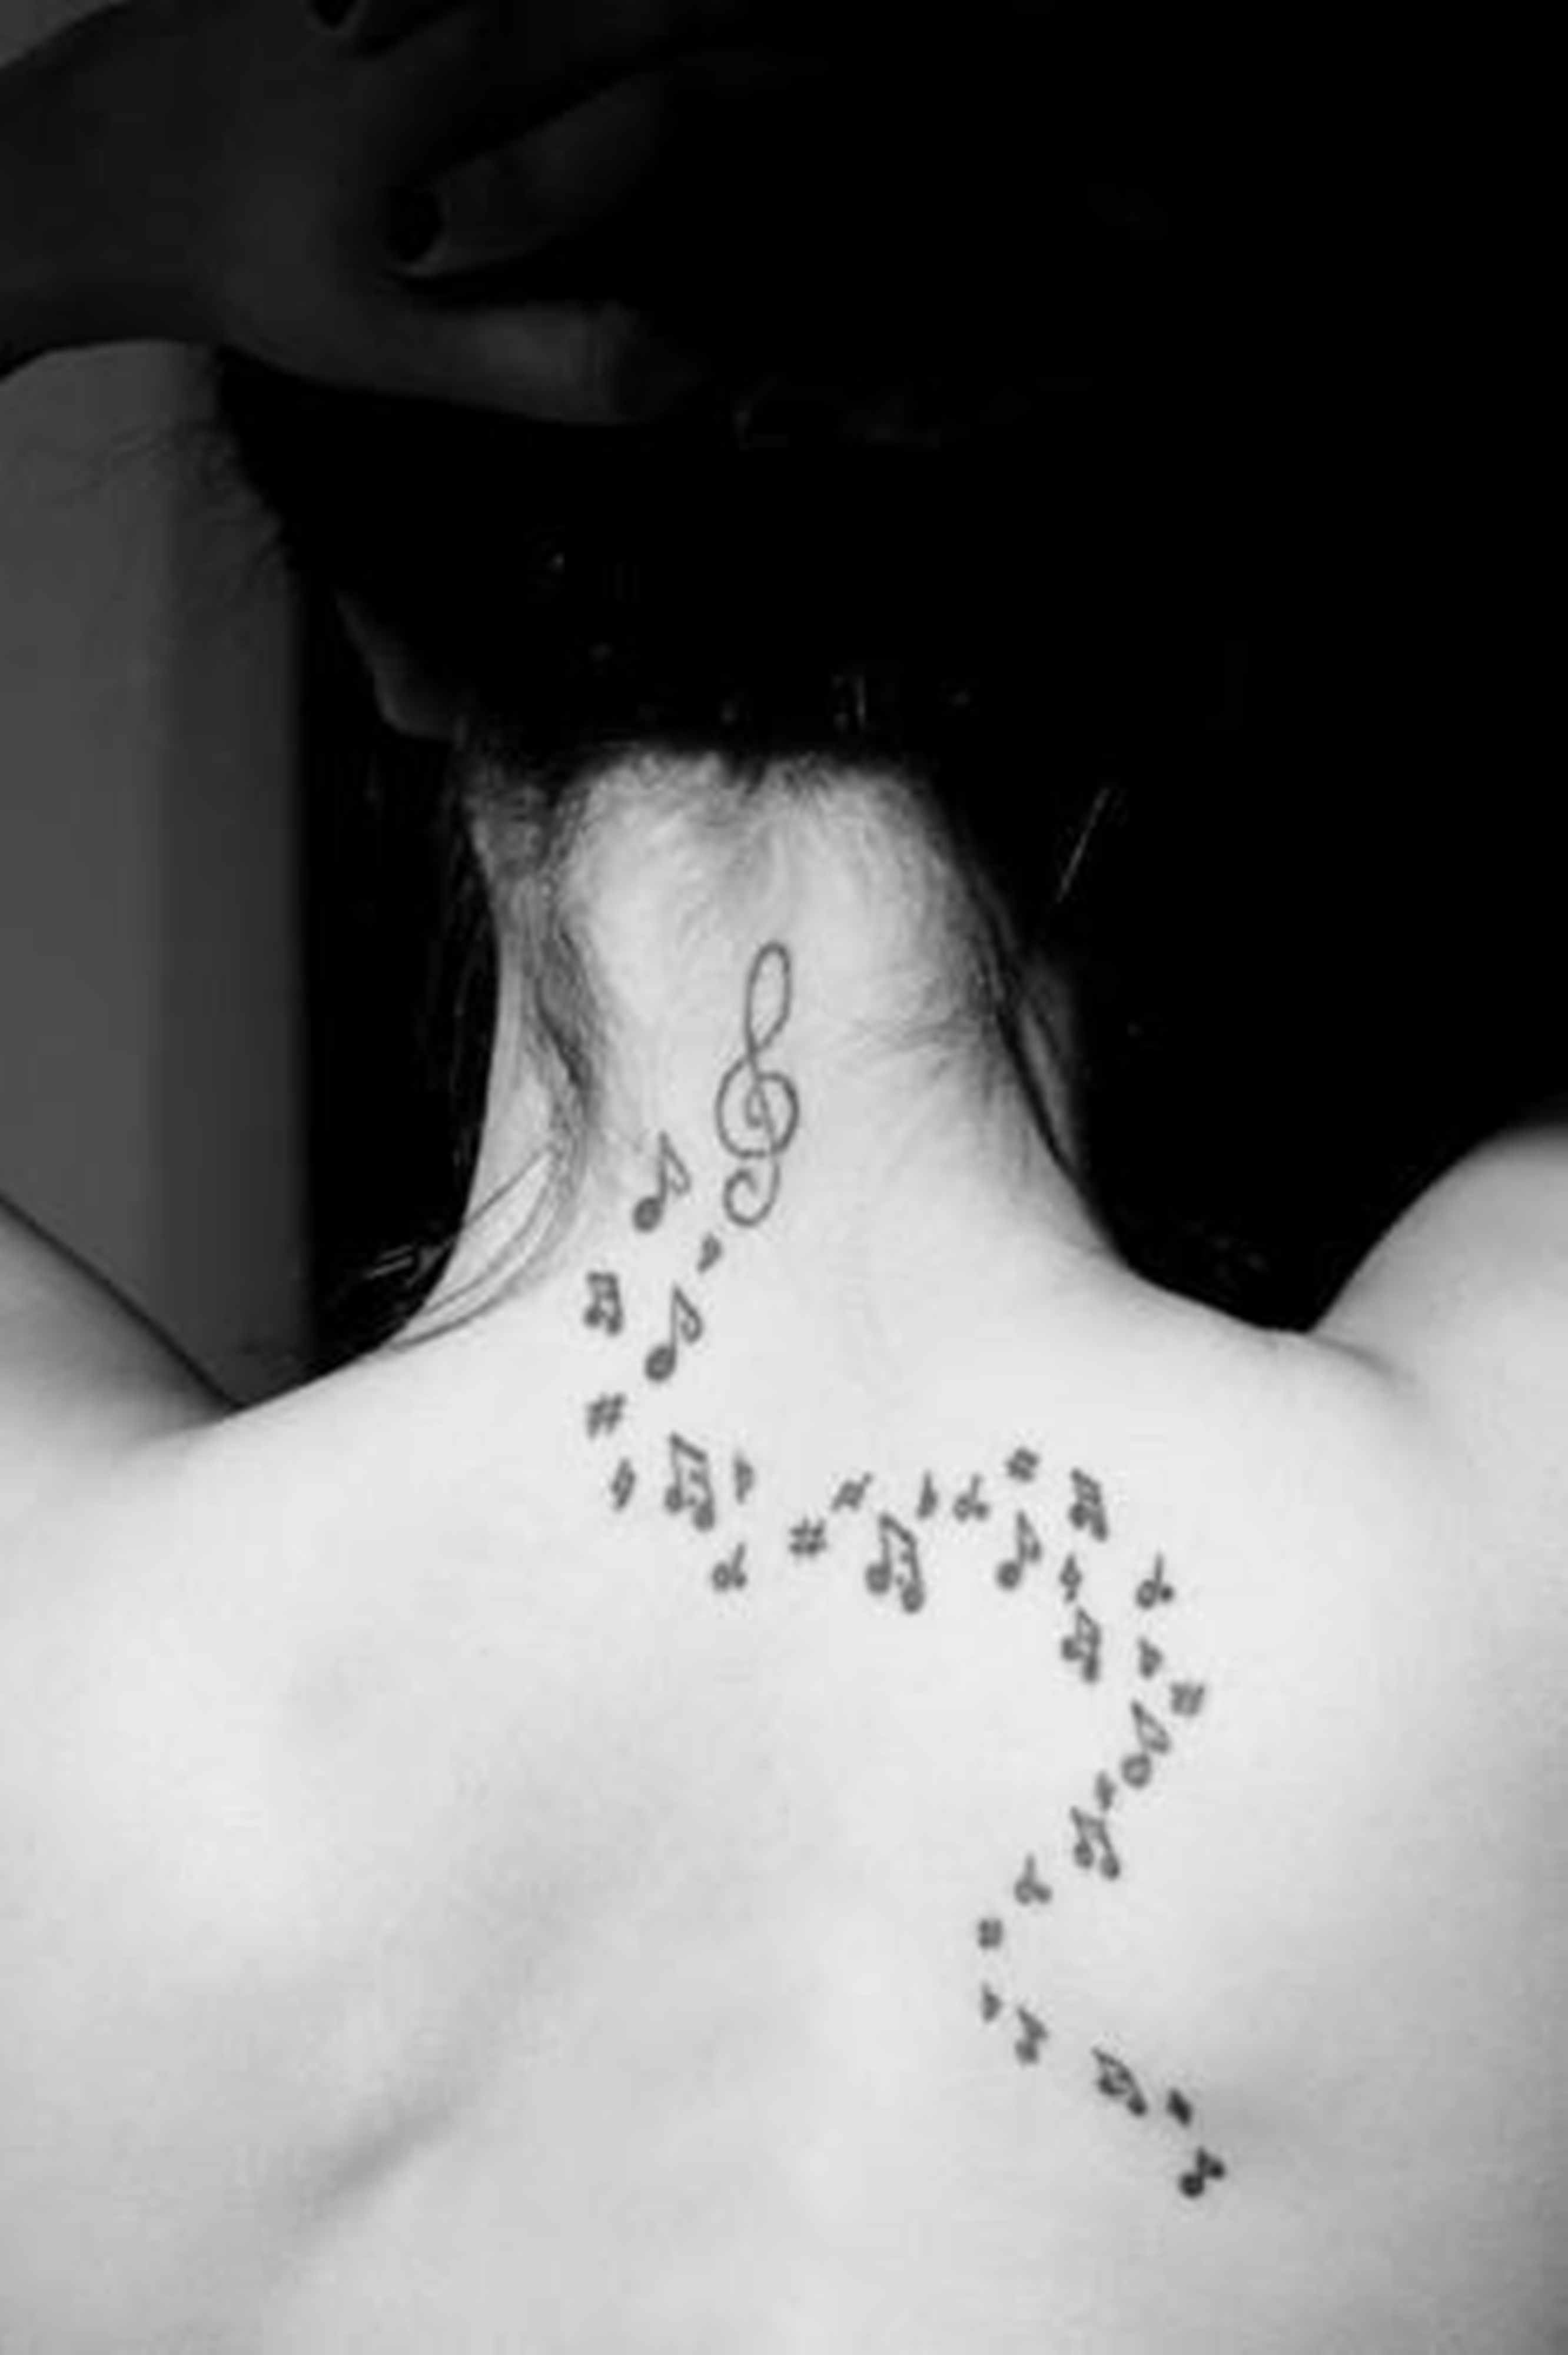 Tatuagens de Música Lindas e Criativas - Fotos